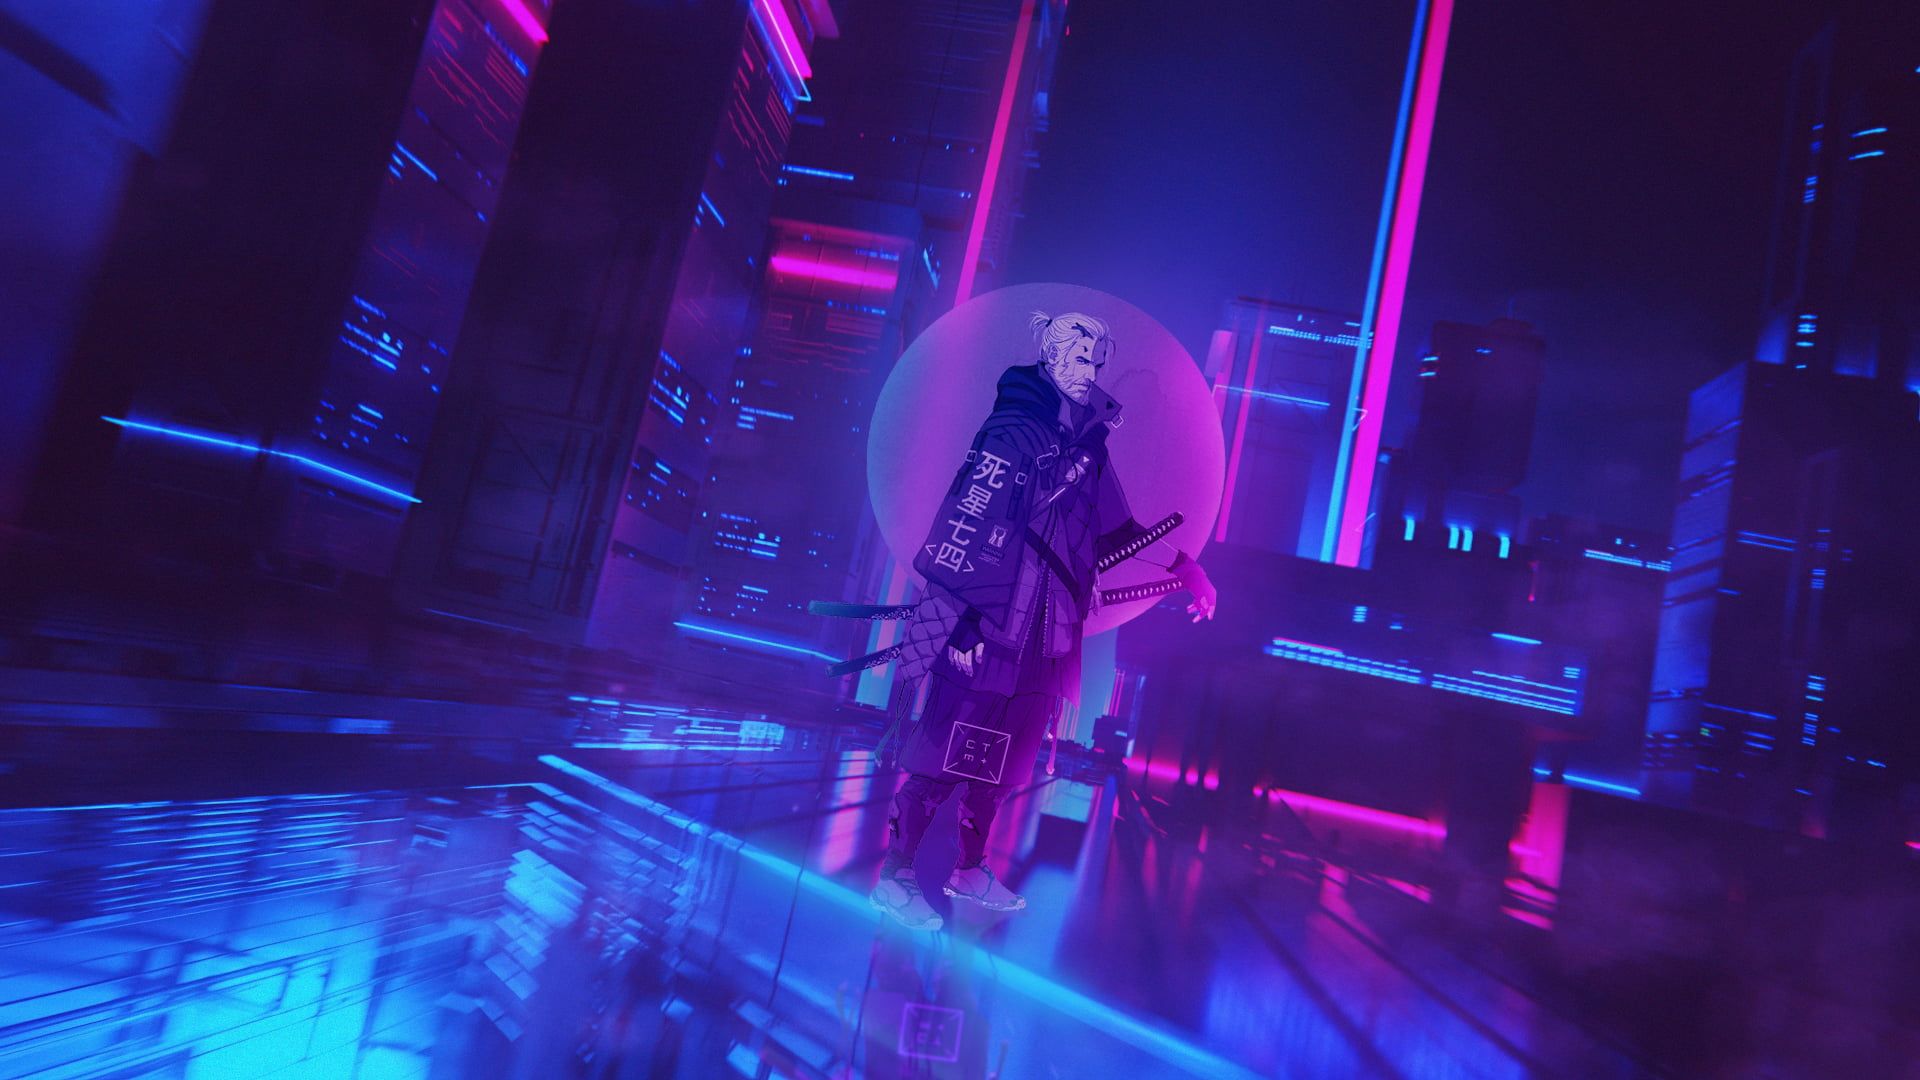 Cyberpunk Wallpaper, Cyberpunk Cyber City, Neon, The Witcher, Geralt Of Rivia